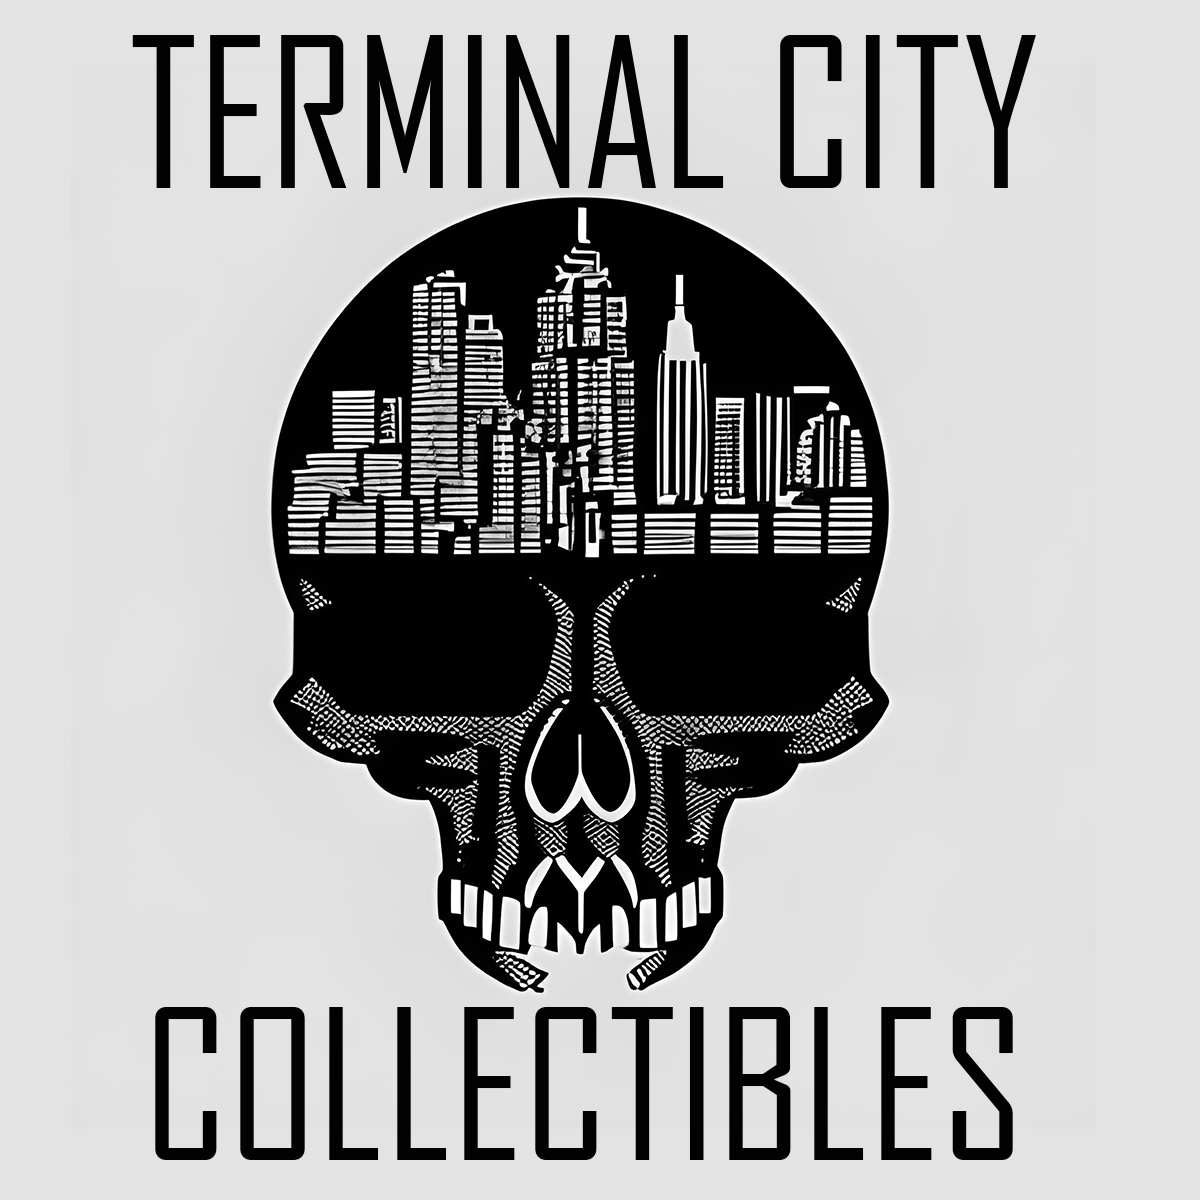 Terminal City Collectibles